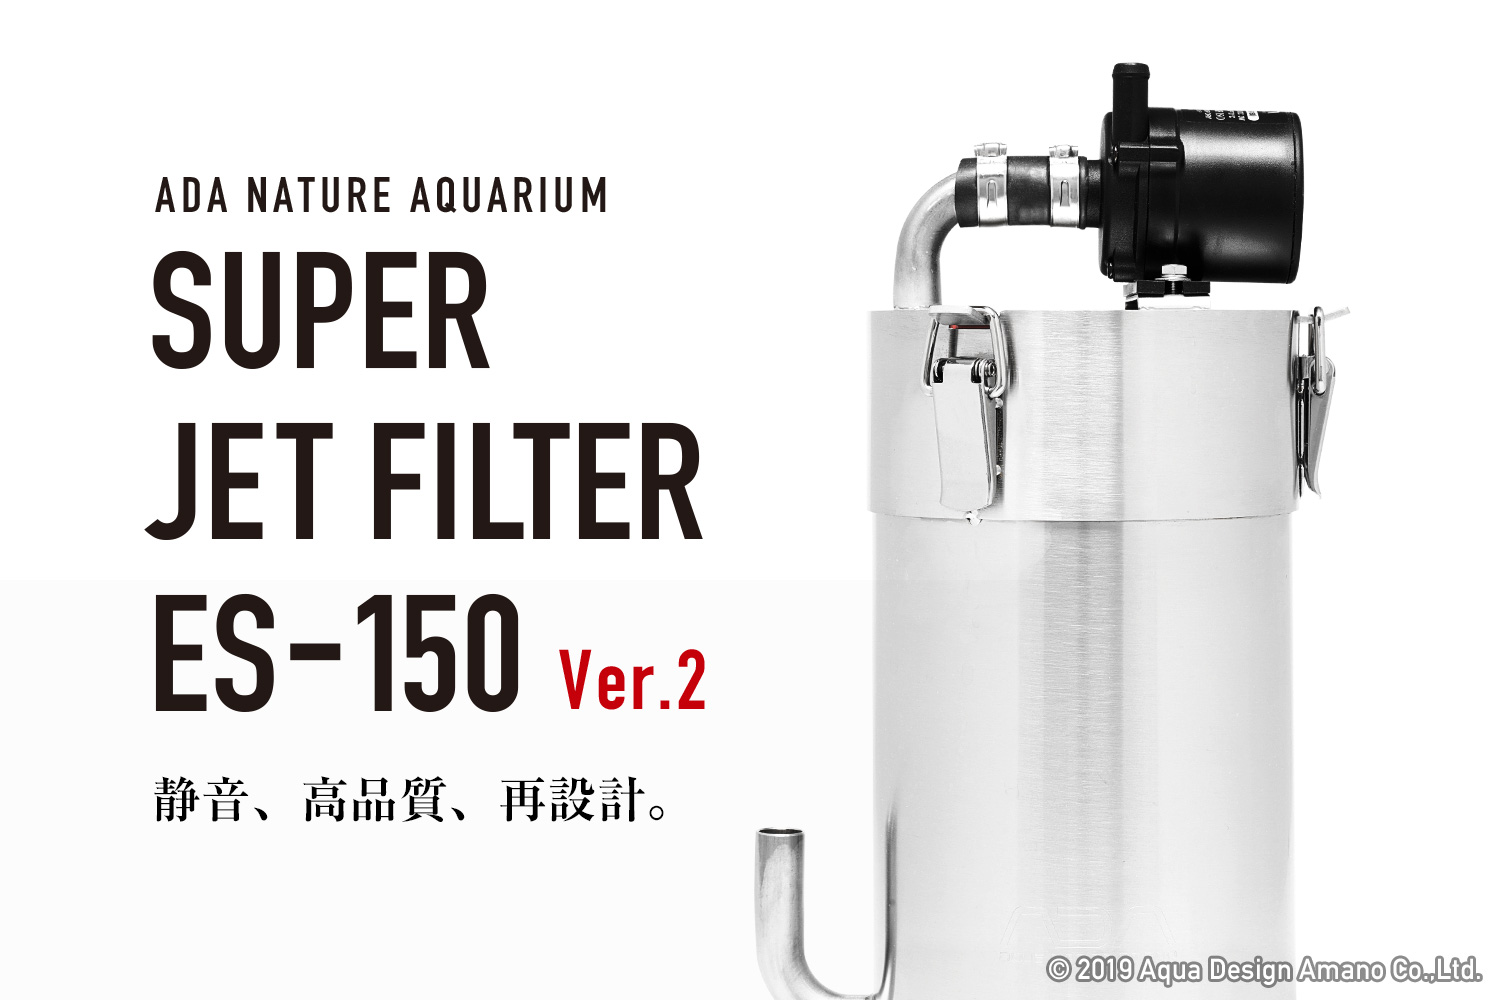 スーパージェットフィルター ES-150 Ver.2 新発売のお知らせ | ADA 